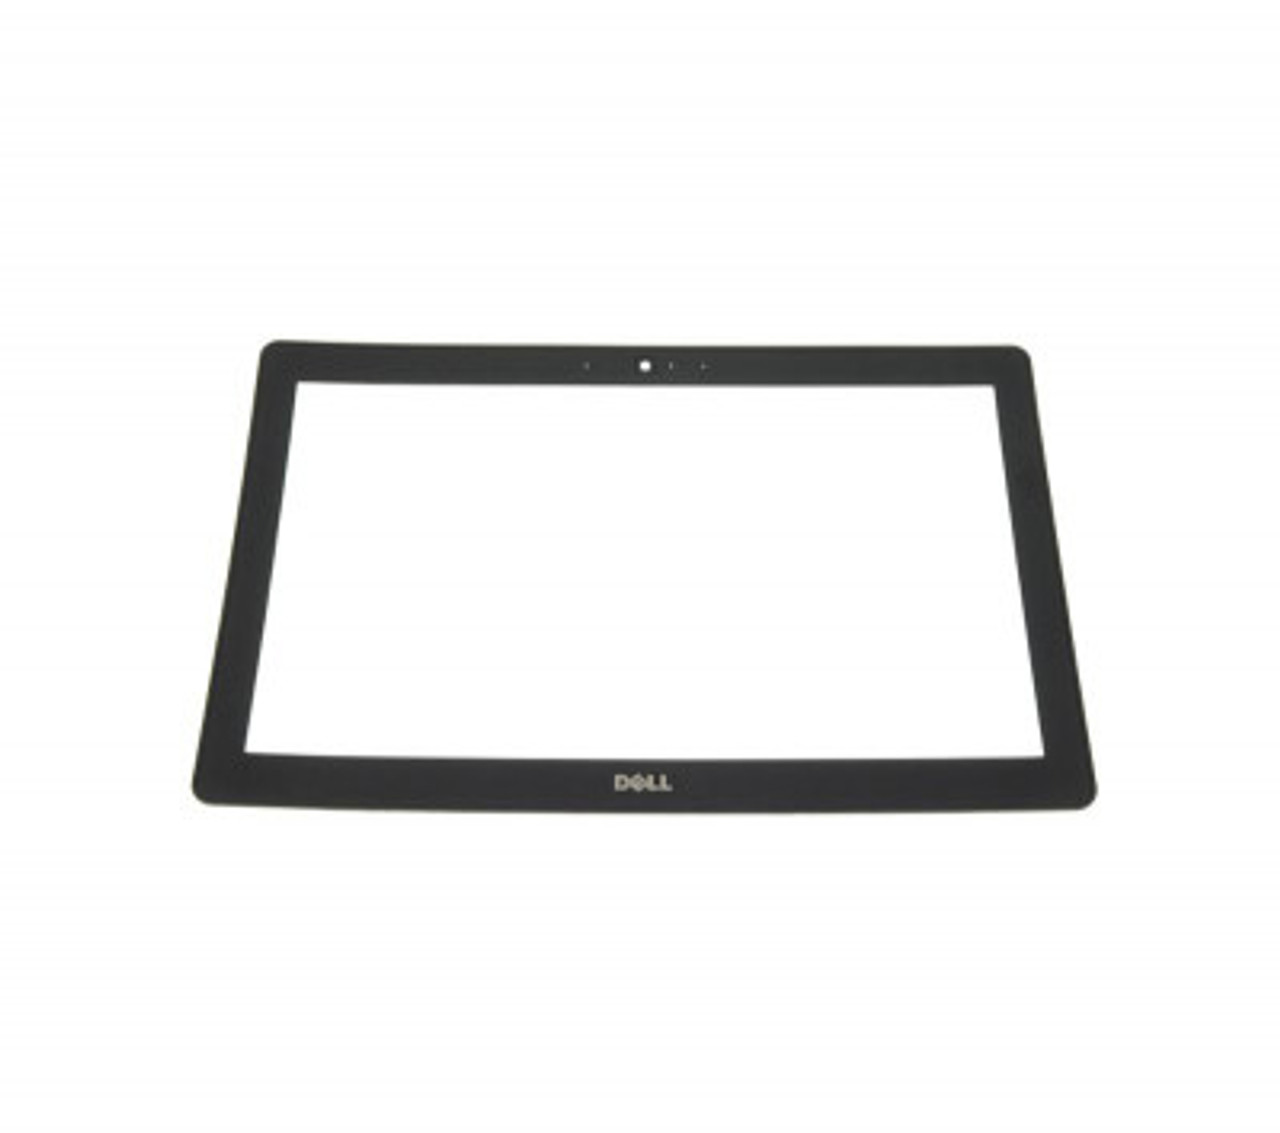 EAZM8002010 - Dell LED Black Bezel WebCam Port for Chromebook 11 3120